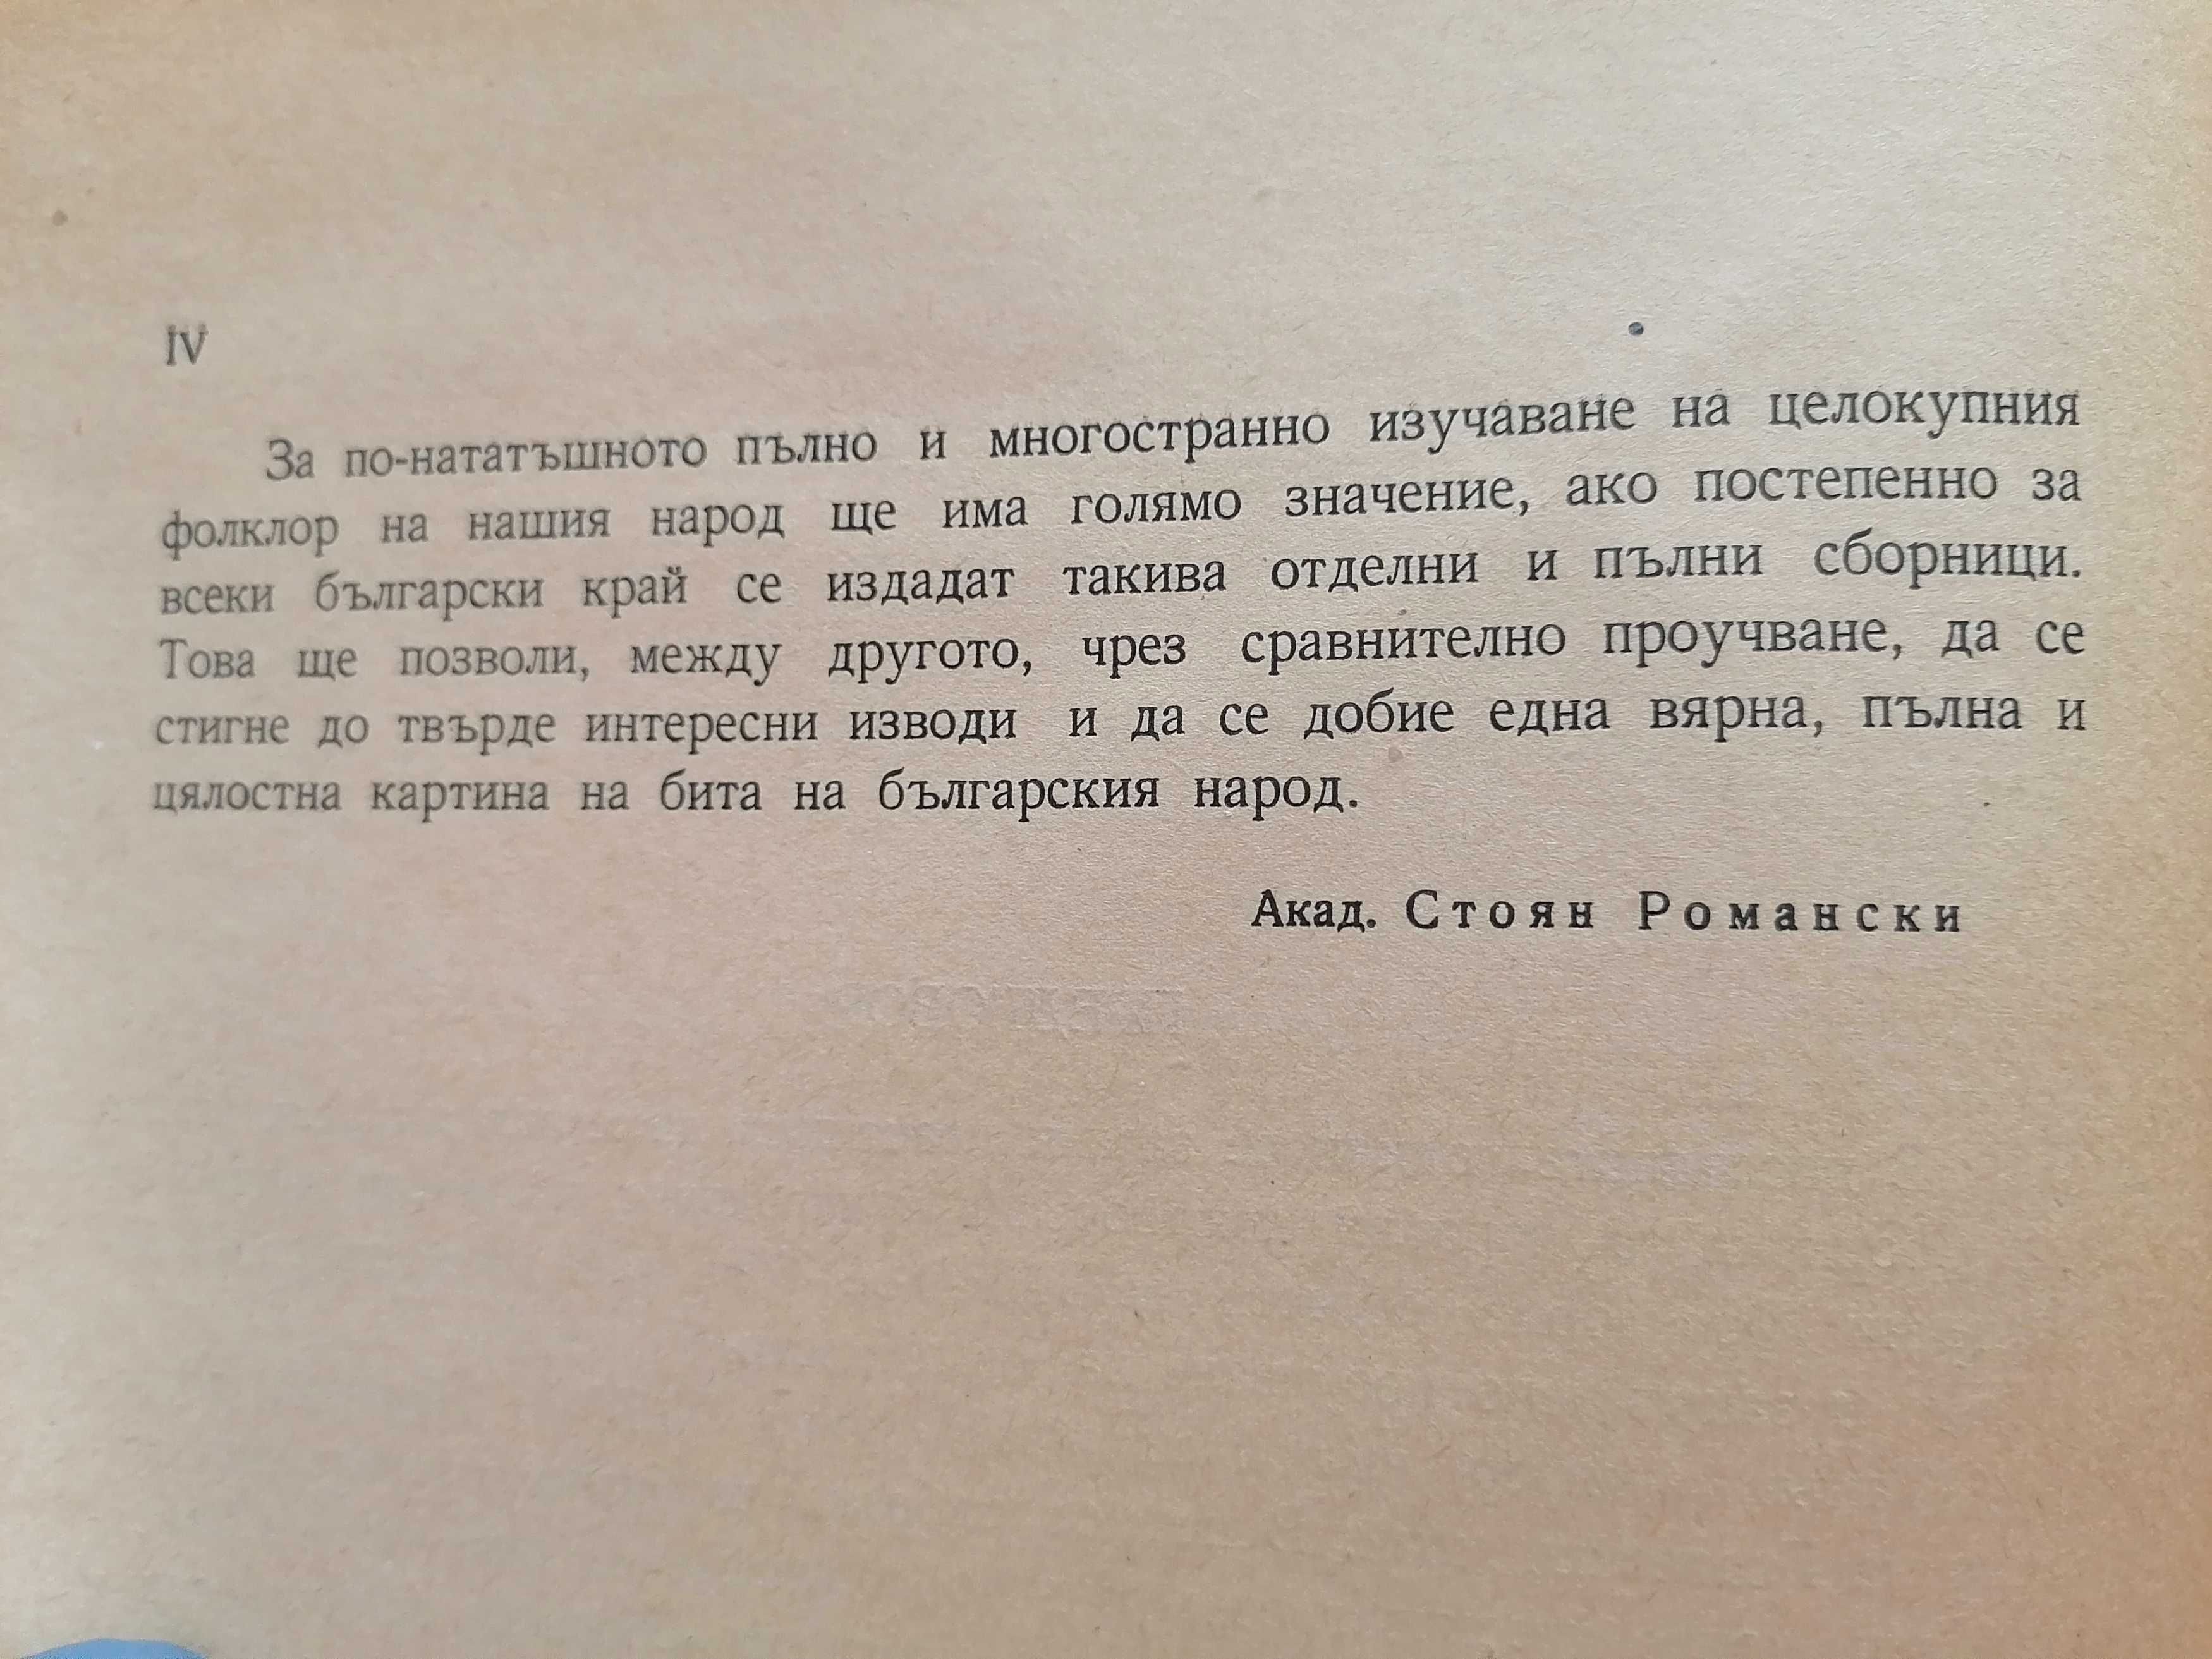 Сборник  - народни умотворения от Граово, БАН 1958